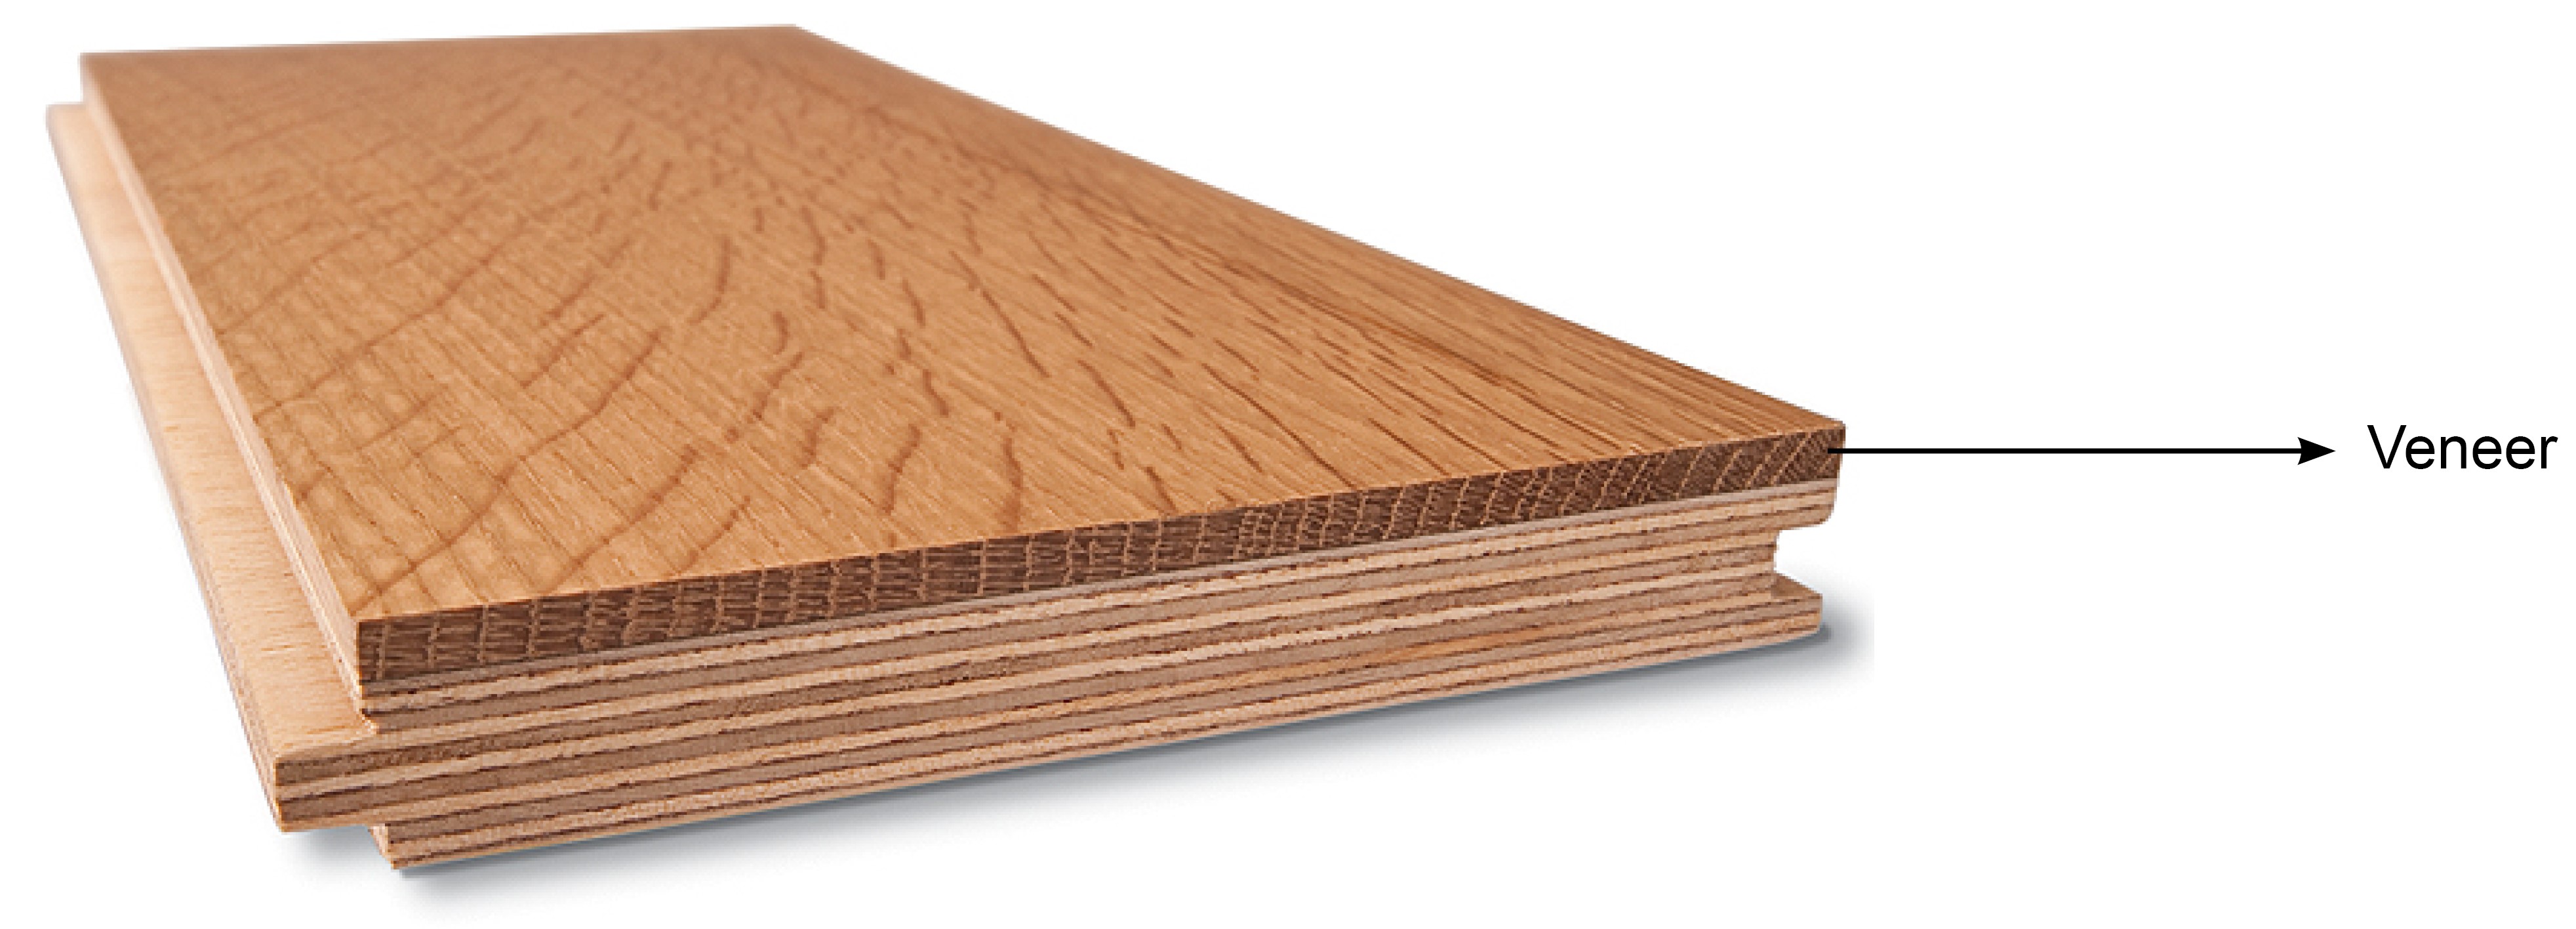 Wood flooring veneer